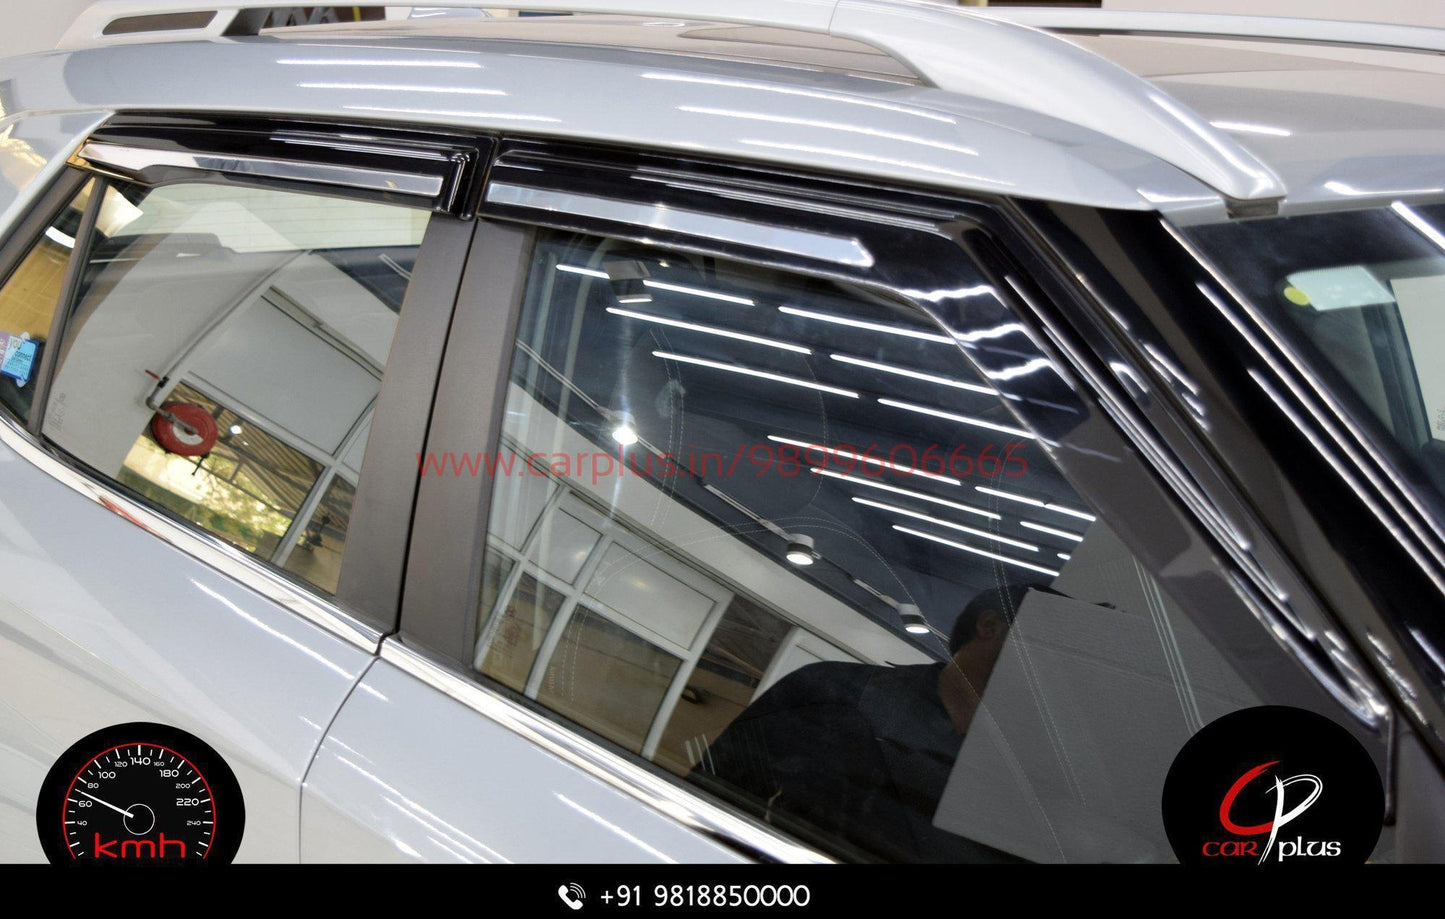 
                  
                    Kanglong Chrome Line Door Visor for Hyundai Venue (1st GEN) KANGLONG-DOOR VISOR DOOR VISOR.
                  
                